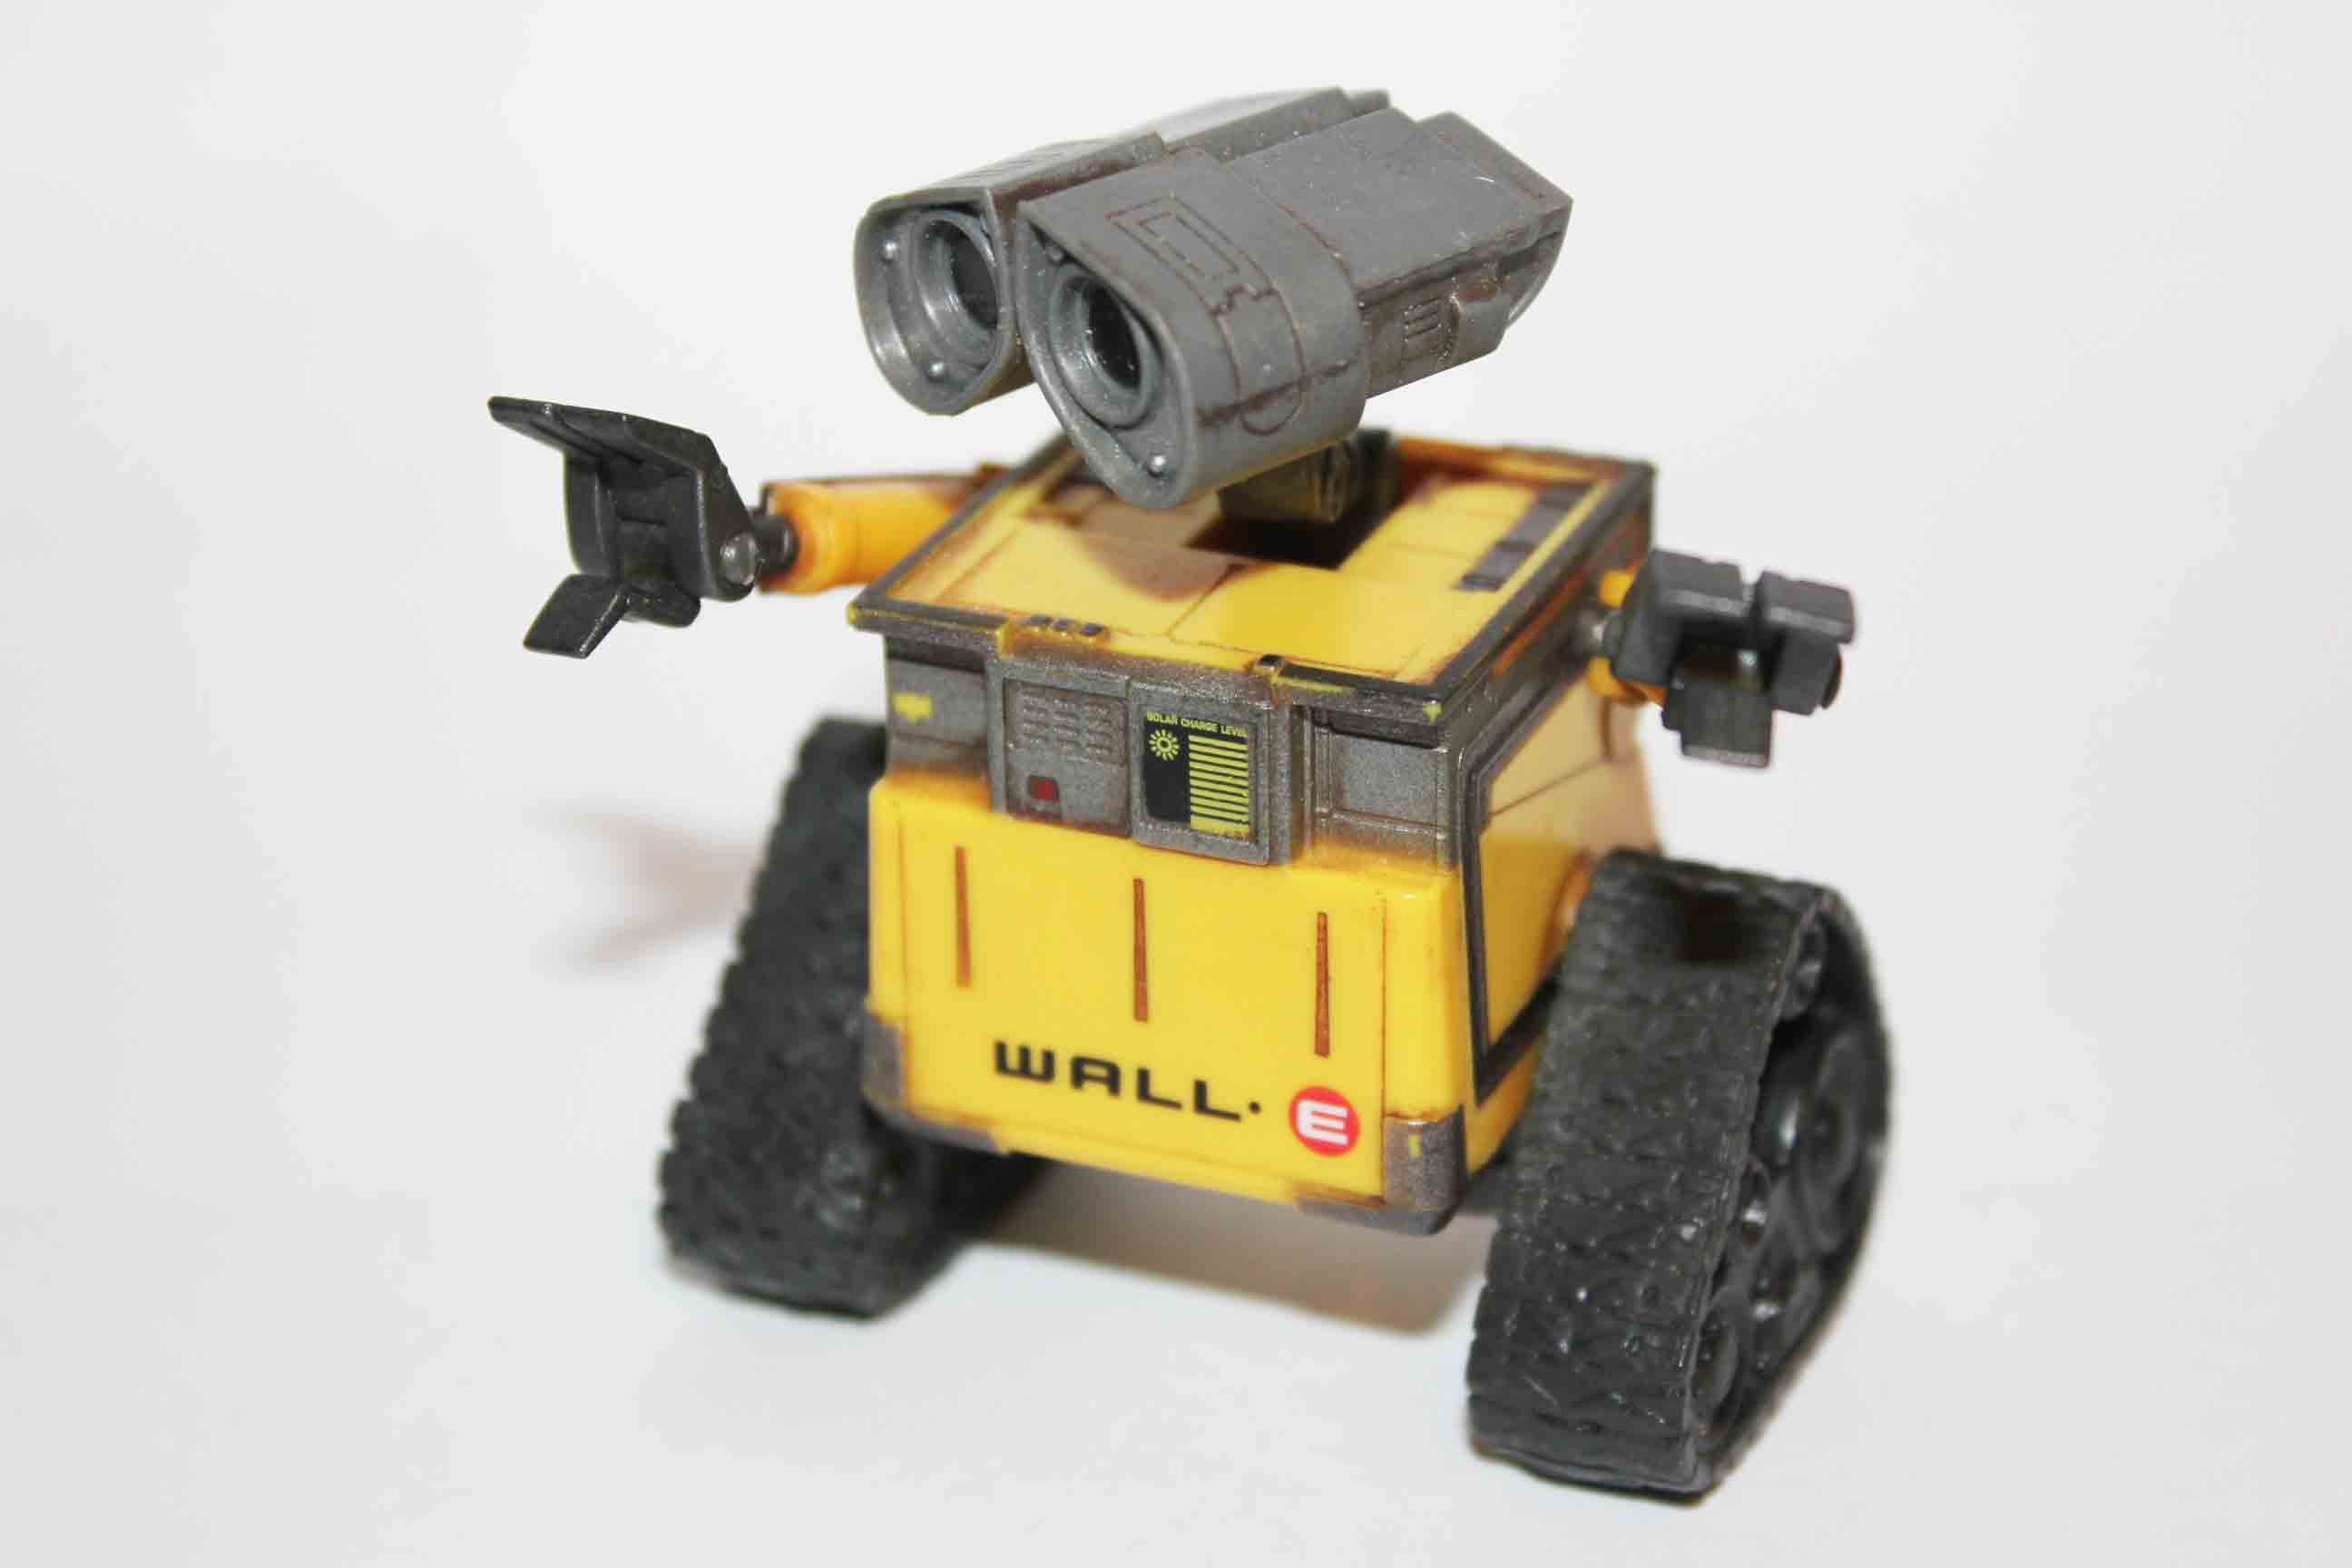 Робот погрузчик Валли радиоуправляемый. Конструктор Валли - робот Валли высота. Ultimate Wall-e - программируемый робот игрушка..